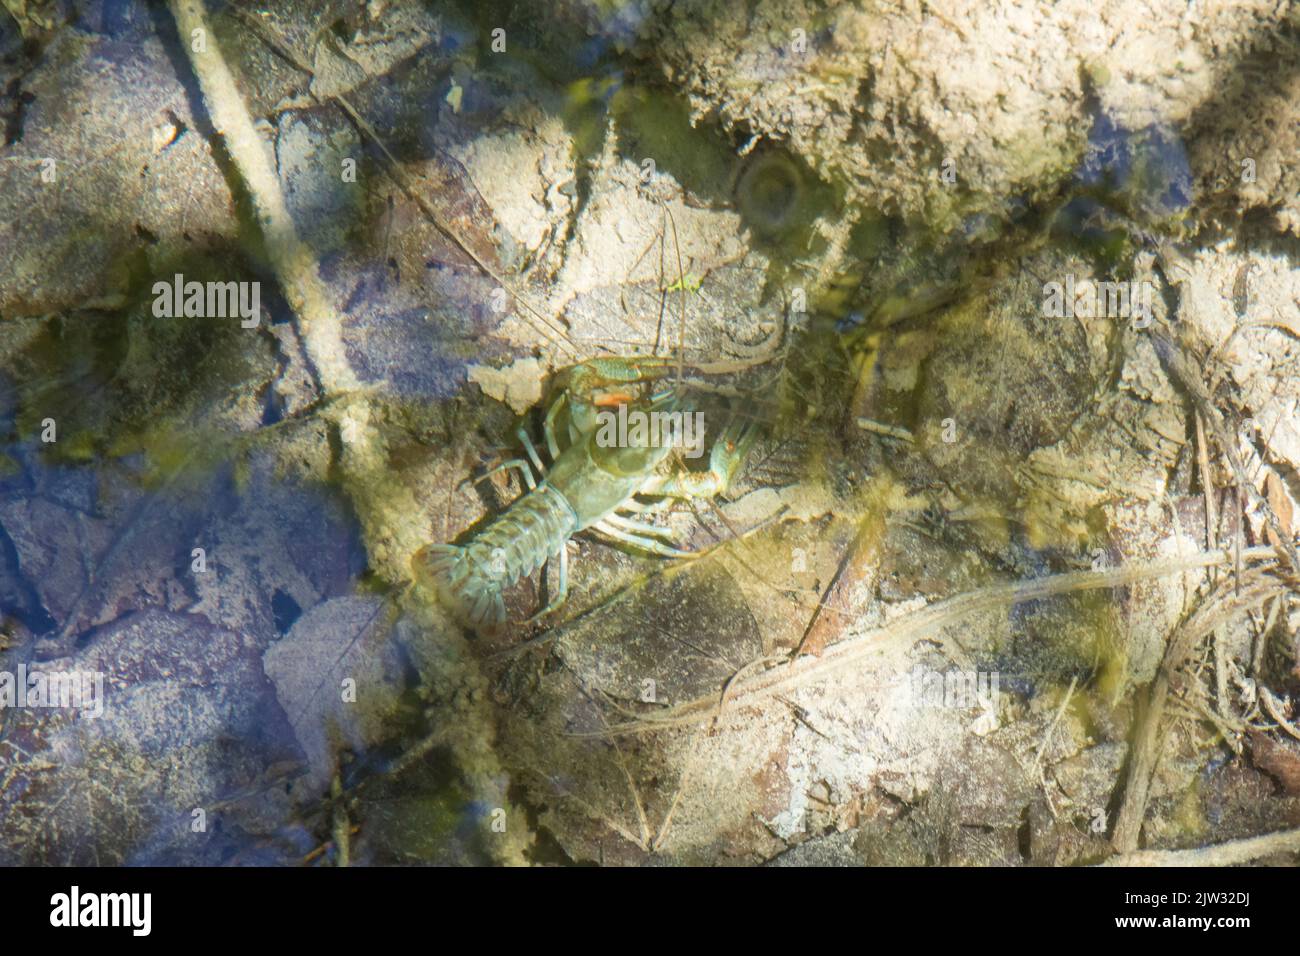 Un écrevisse européen (Astacus astacus) dans l'eau claire et peu profonde d'une piscine vue d'en haut. Parc national des lacs de Plitvice, Coatia, Europe. Banque D'Images